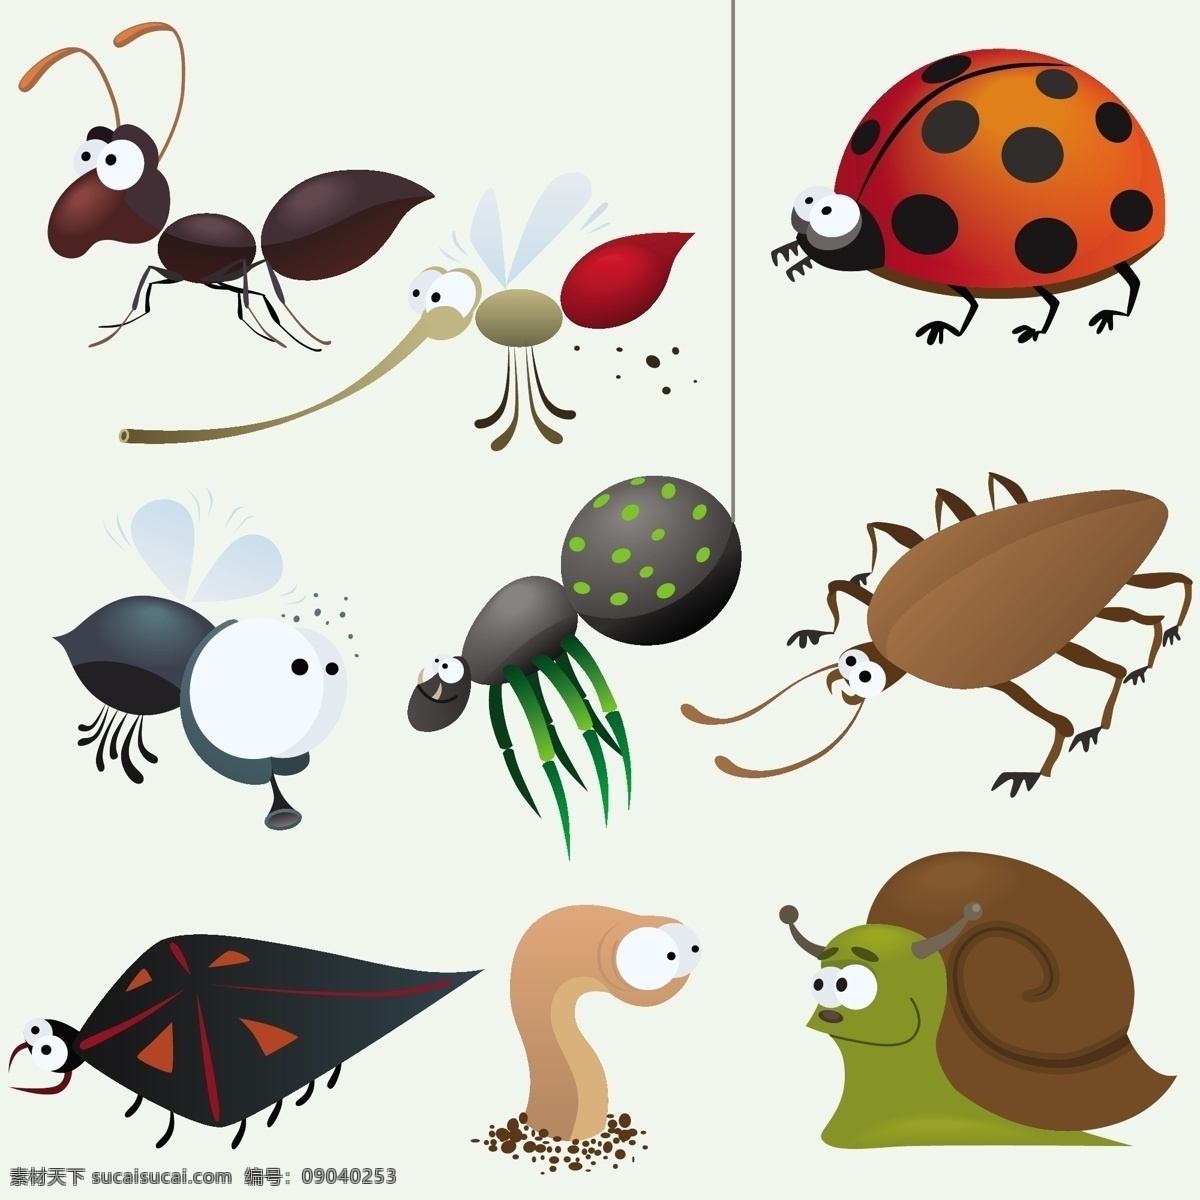 各种 卡通 昆虫 图案 卡通昆虫 蚯蚓 蜗牛 七星瓢虫 蜜蜂 蜘蛛 蚊子 蟑螂 蚂蚁 边框底纹 背景图案 昆虫世界 生物世界 矢量素材 白色